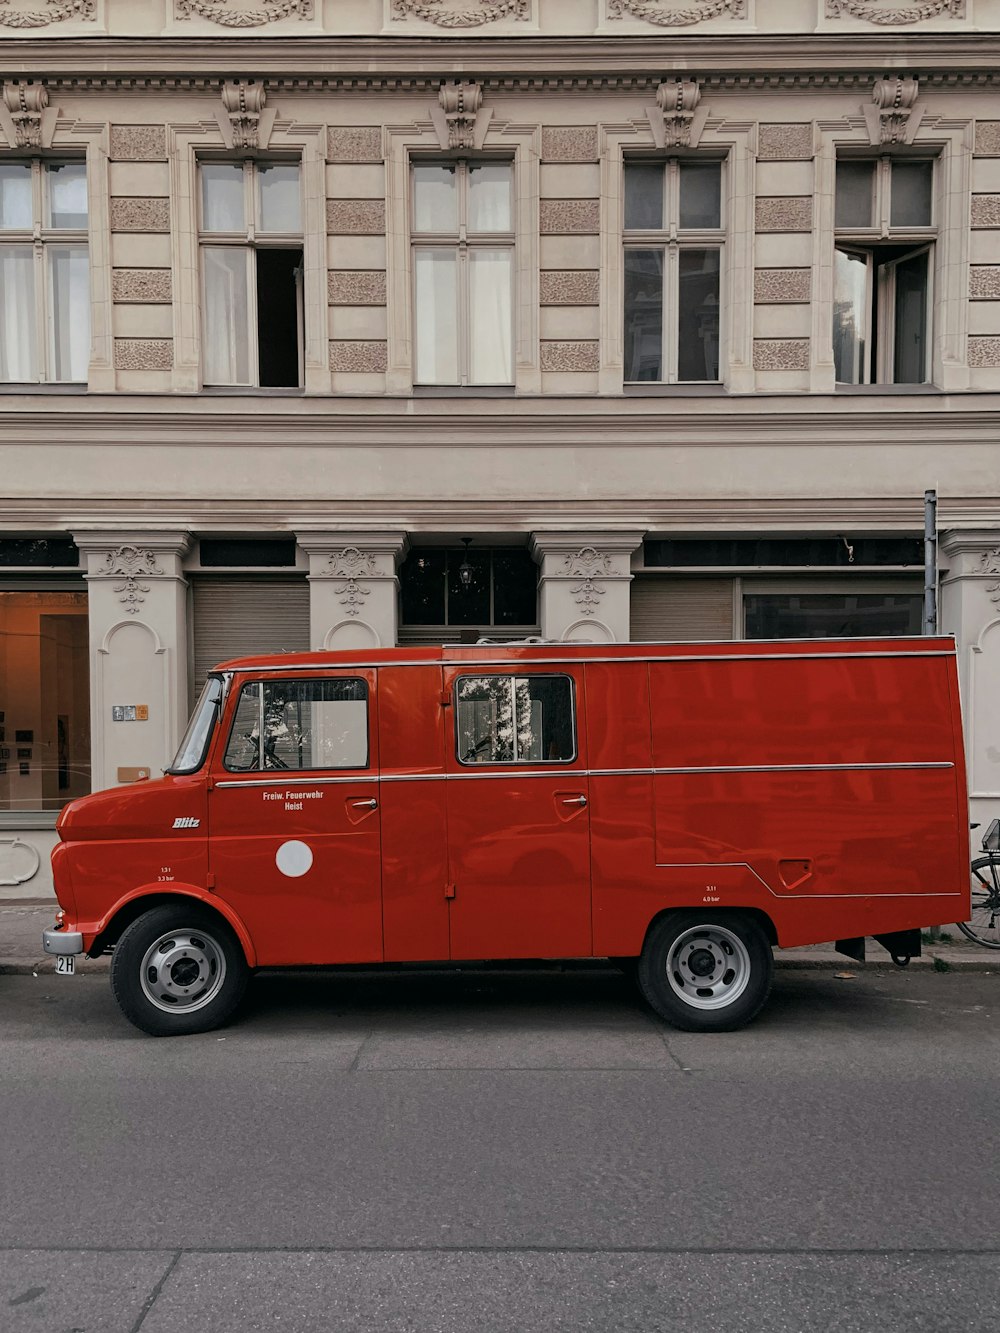 uma van vermelha estacionada em frente a um prédio